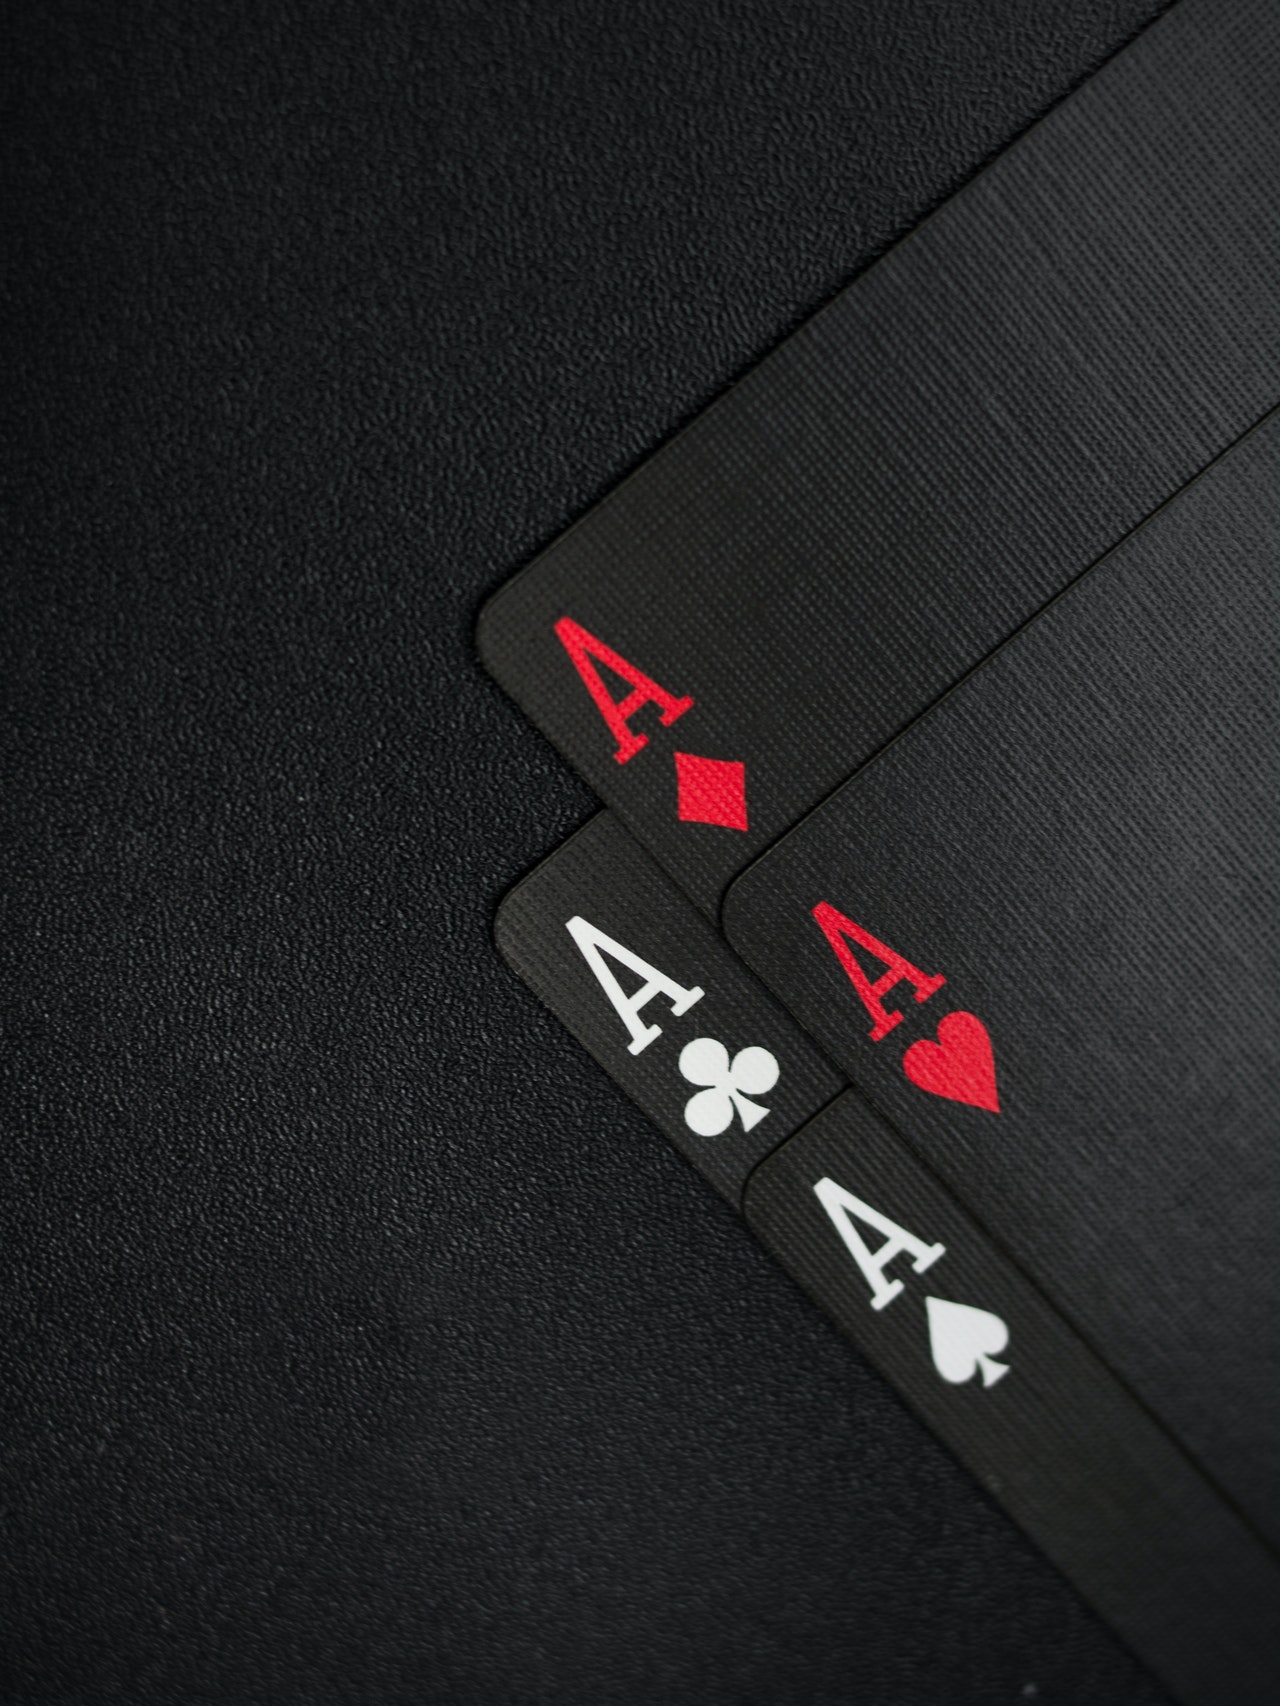 Είναι ο έρωτας μια παρτίδα πόκερ